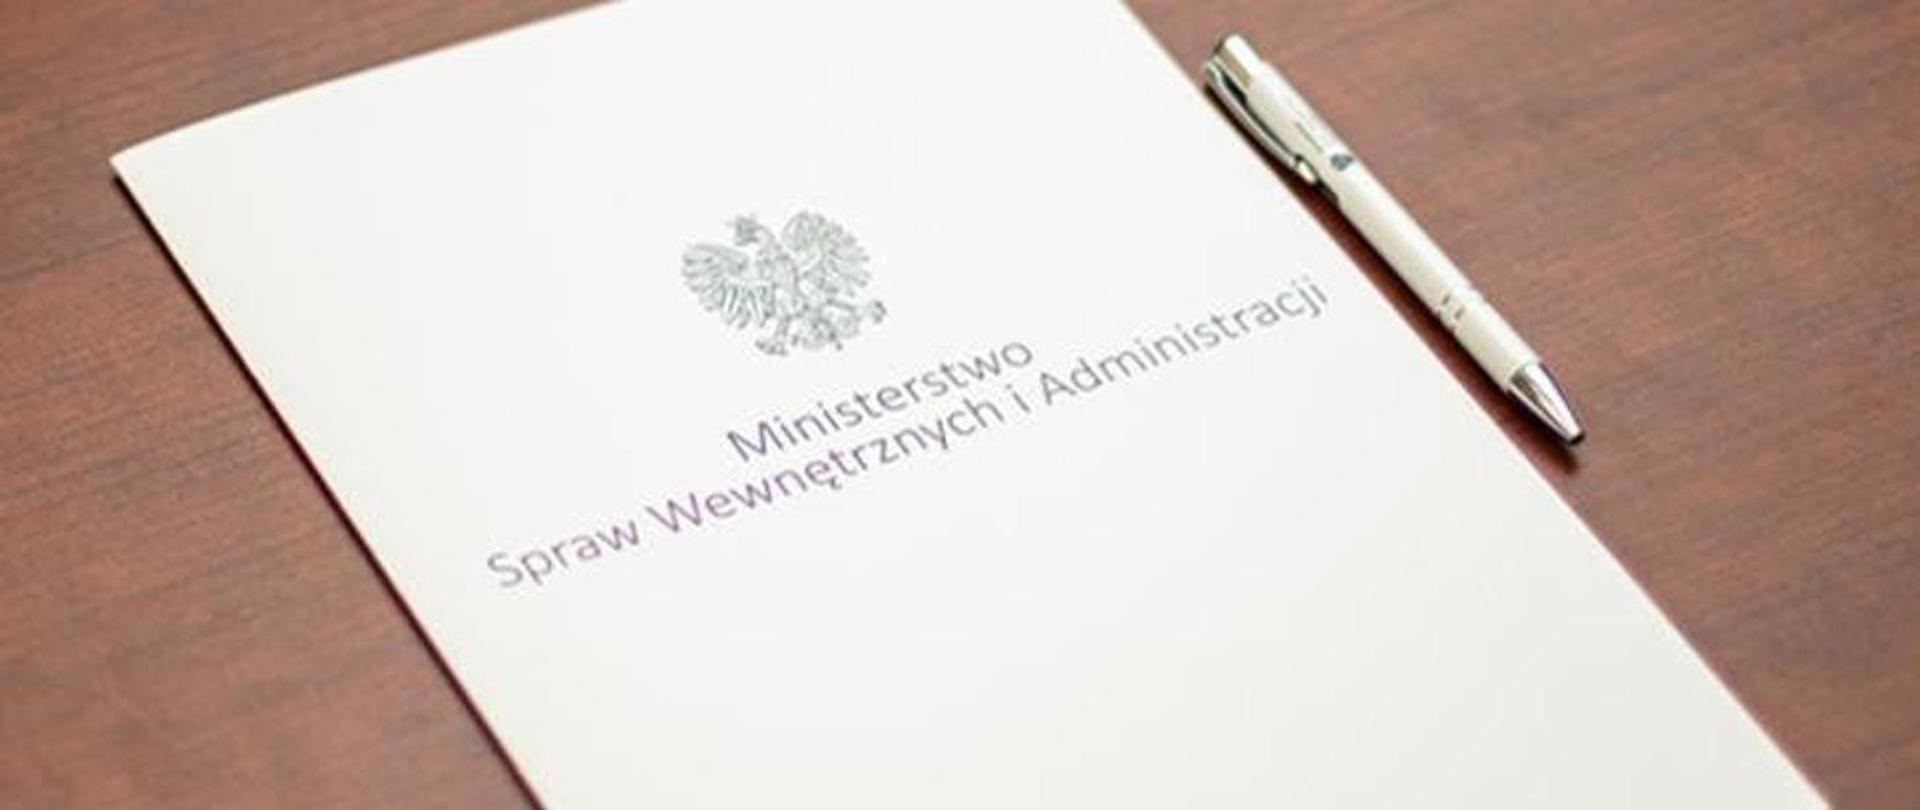 Zdjęcie przedstawia dokument leżący na biurku z długopisem. Na dokumencie jest napisane Ministerstwo Spraw Wewnętrznych i Administracji oraz Godło Polski.